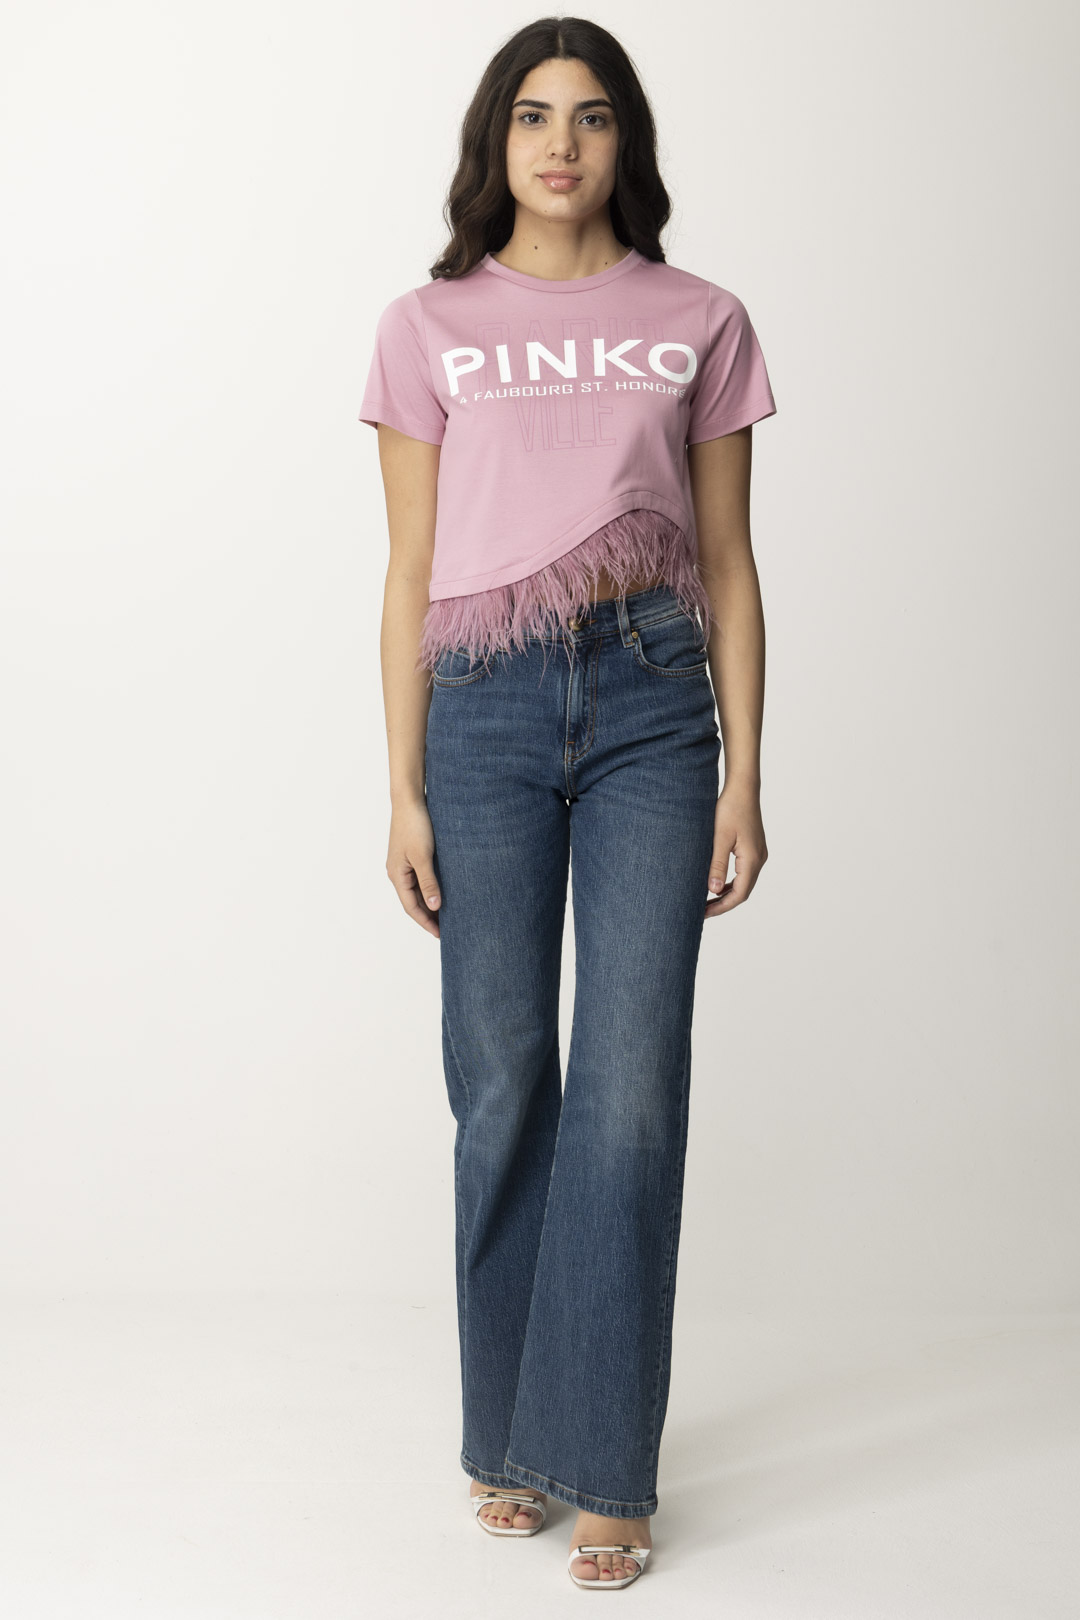 Vista previa: Pinko Camiseta con logo y plumas. FUMO ORCHIDEA